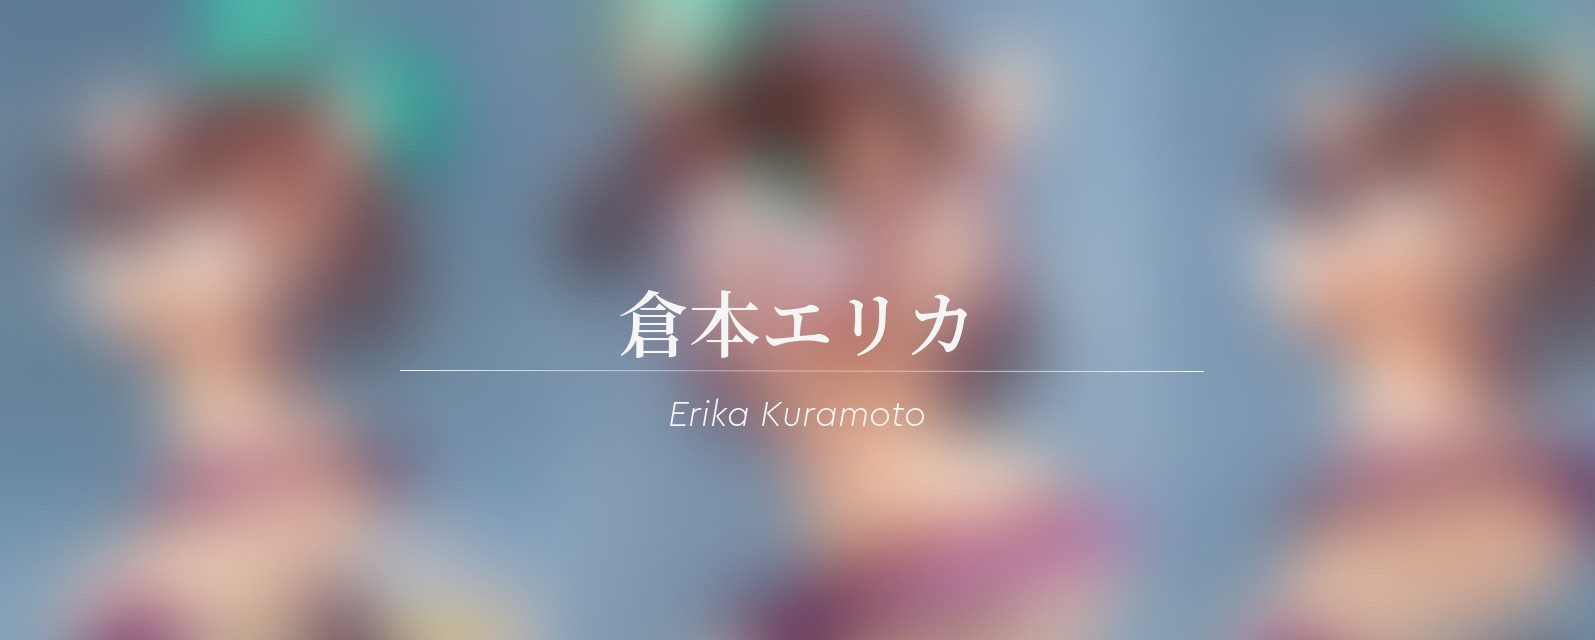 Erika Kuramoto by Rocket Boy from Mahou Shoujo RAITA